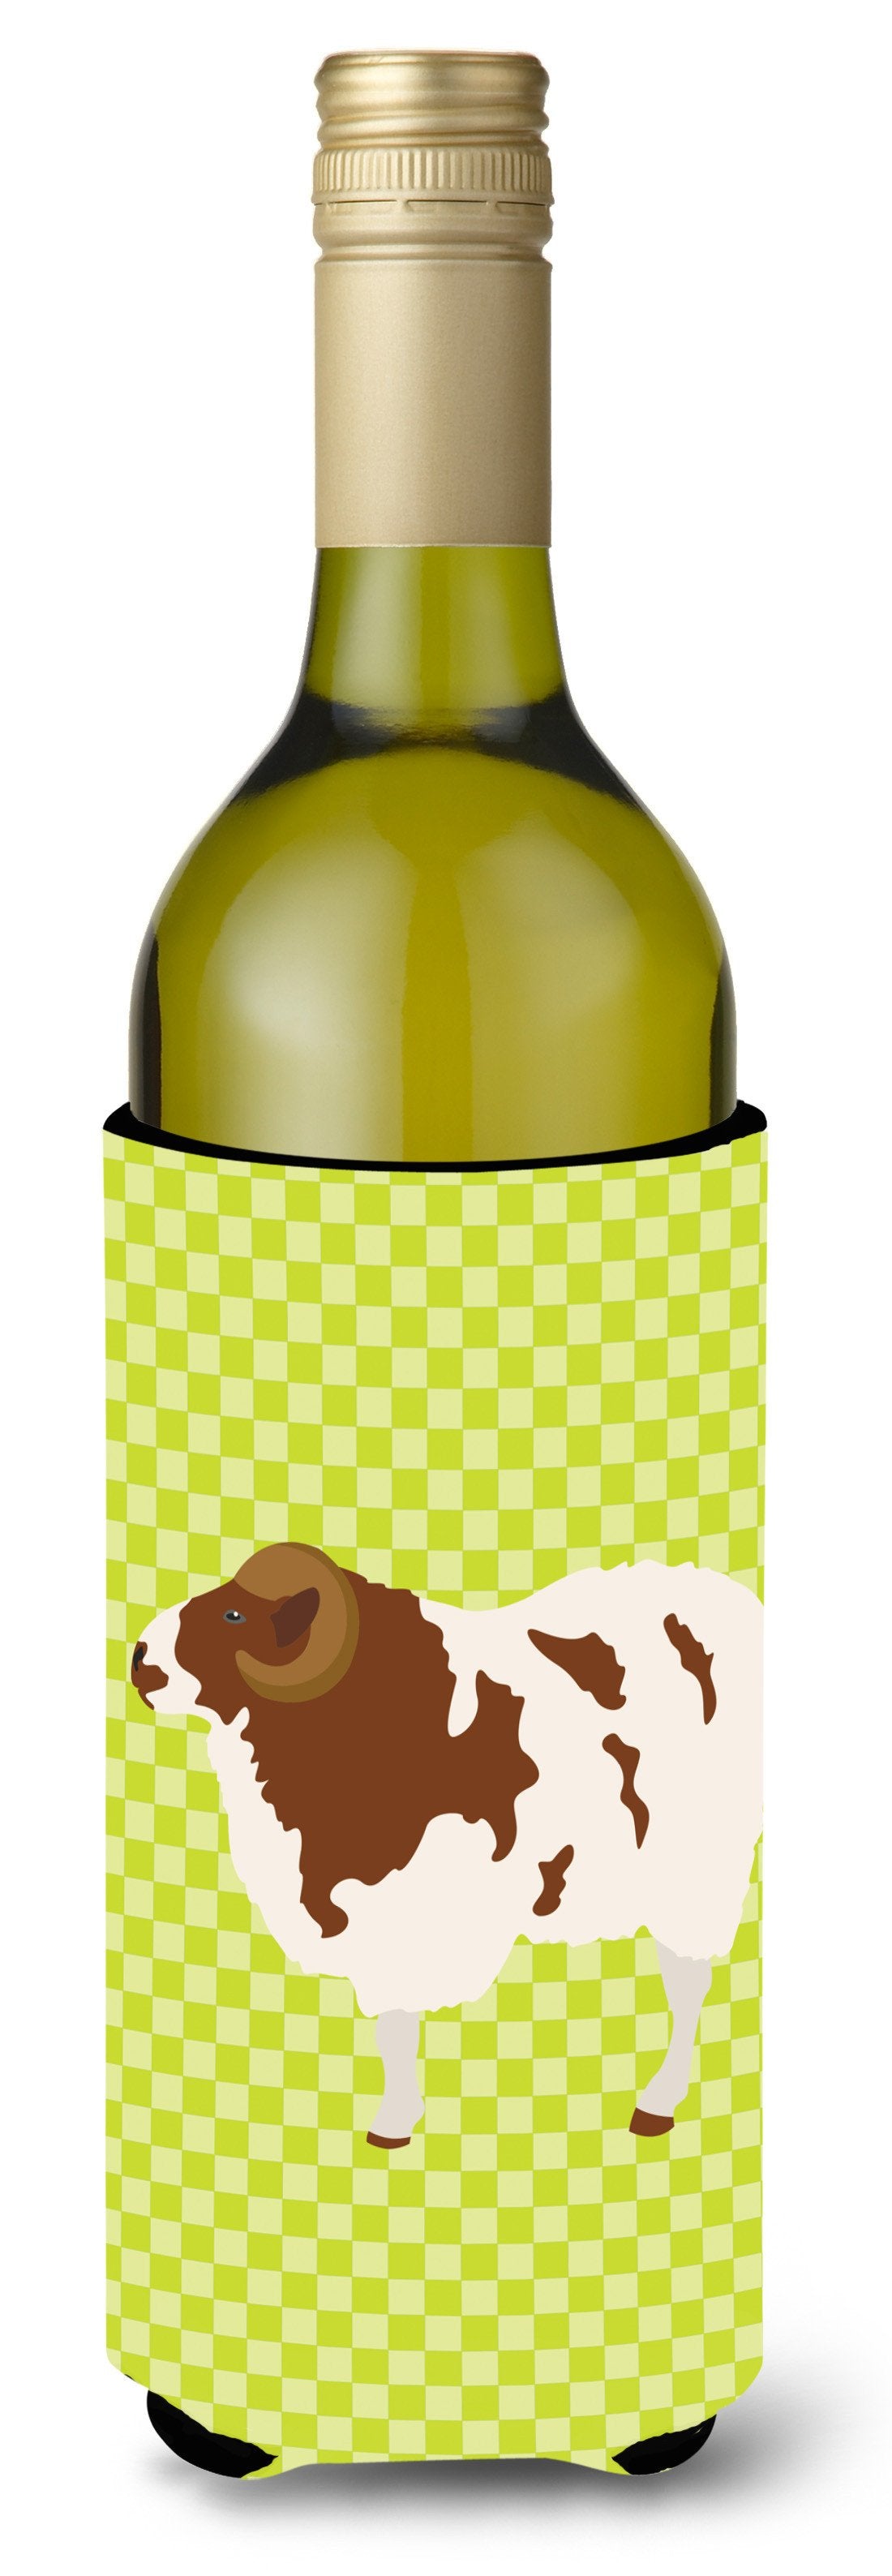 Jacob Sheep Green Wine Bottle Beverge Insulator Hugger BB7801LITERK by Caroline's Treasures